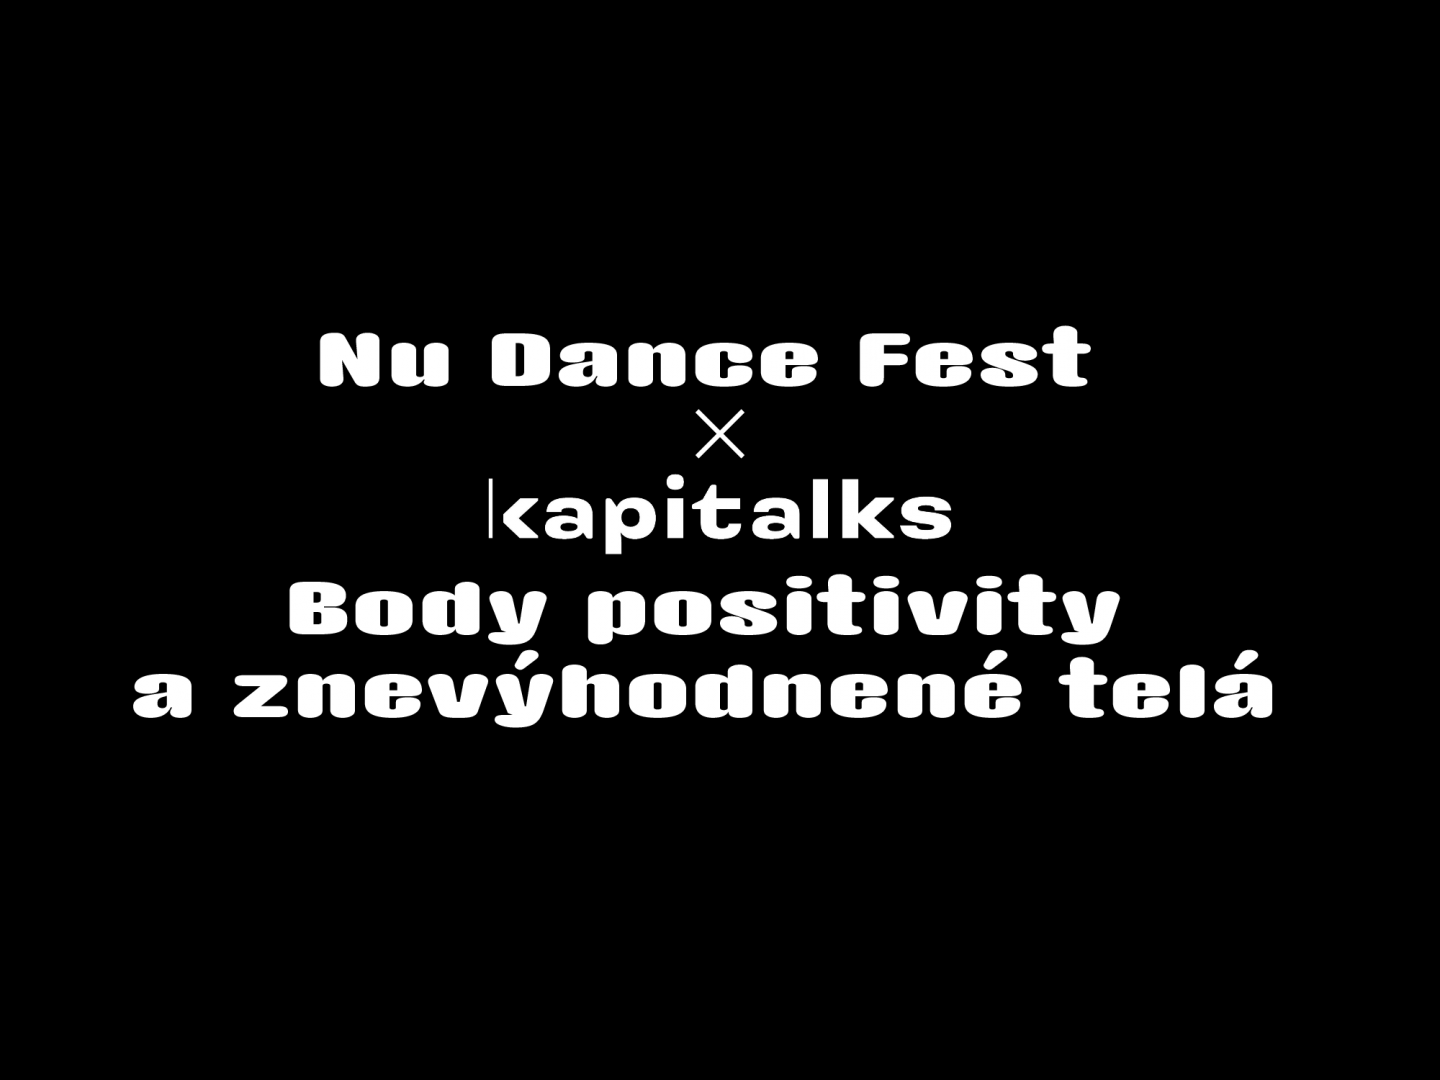 Nu Dance Fest x Kapitalks: Body positivity a znevýhodnené telá